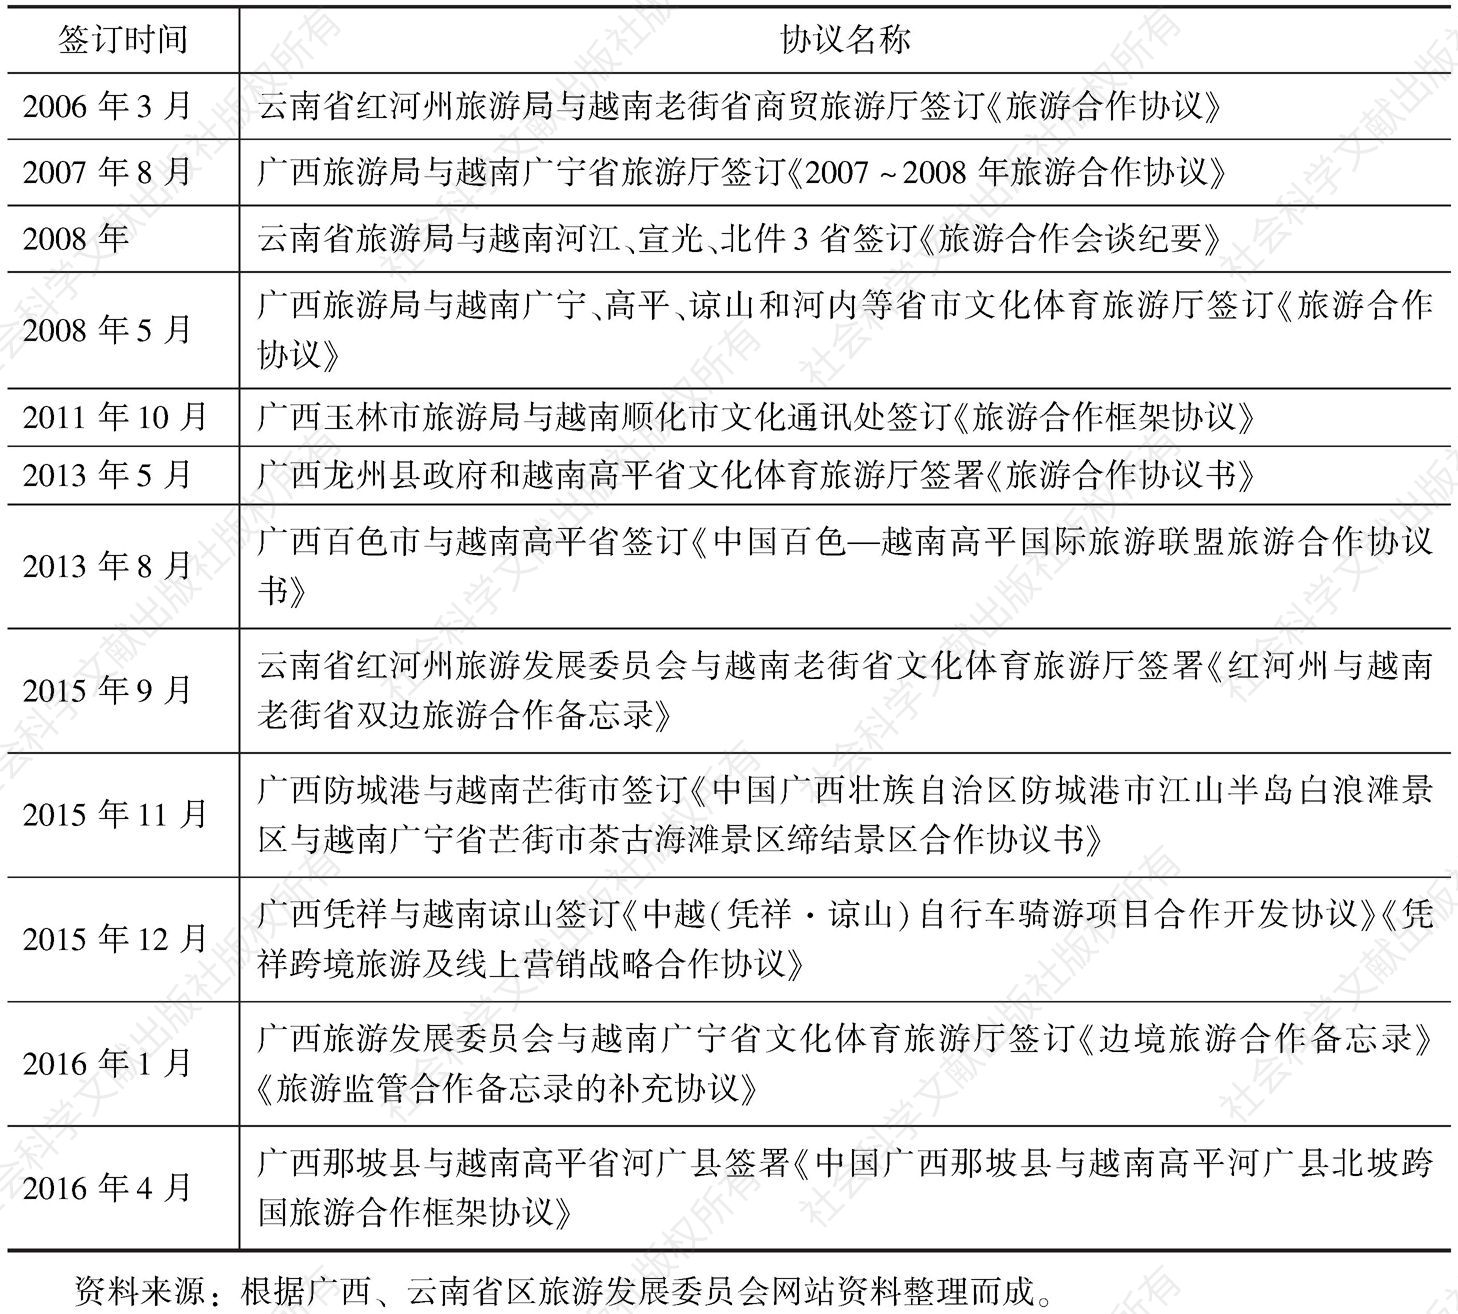 表9 中国广西、云南省区与越南签订的旅游合作协议